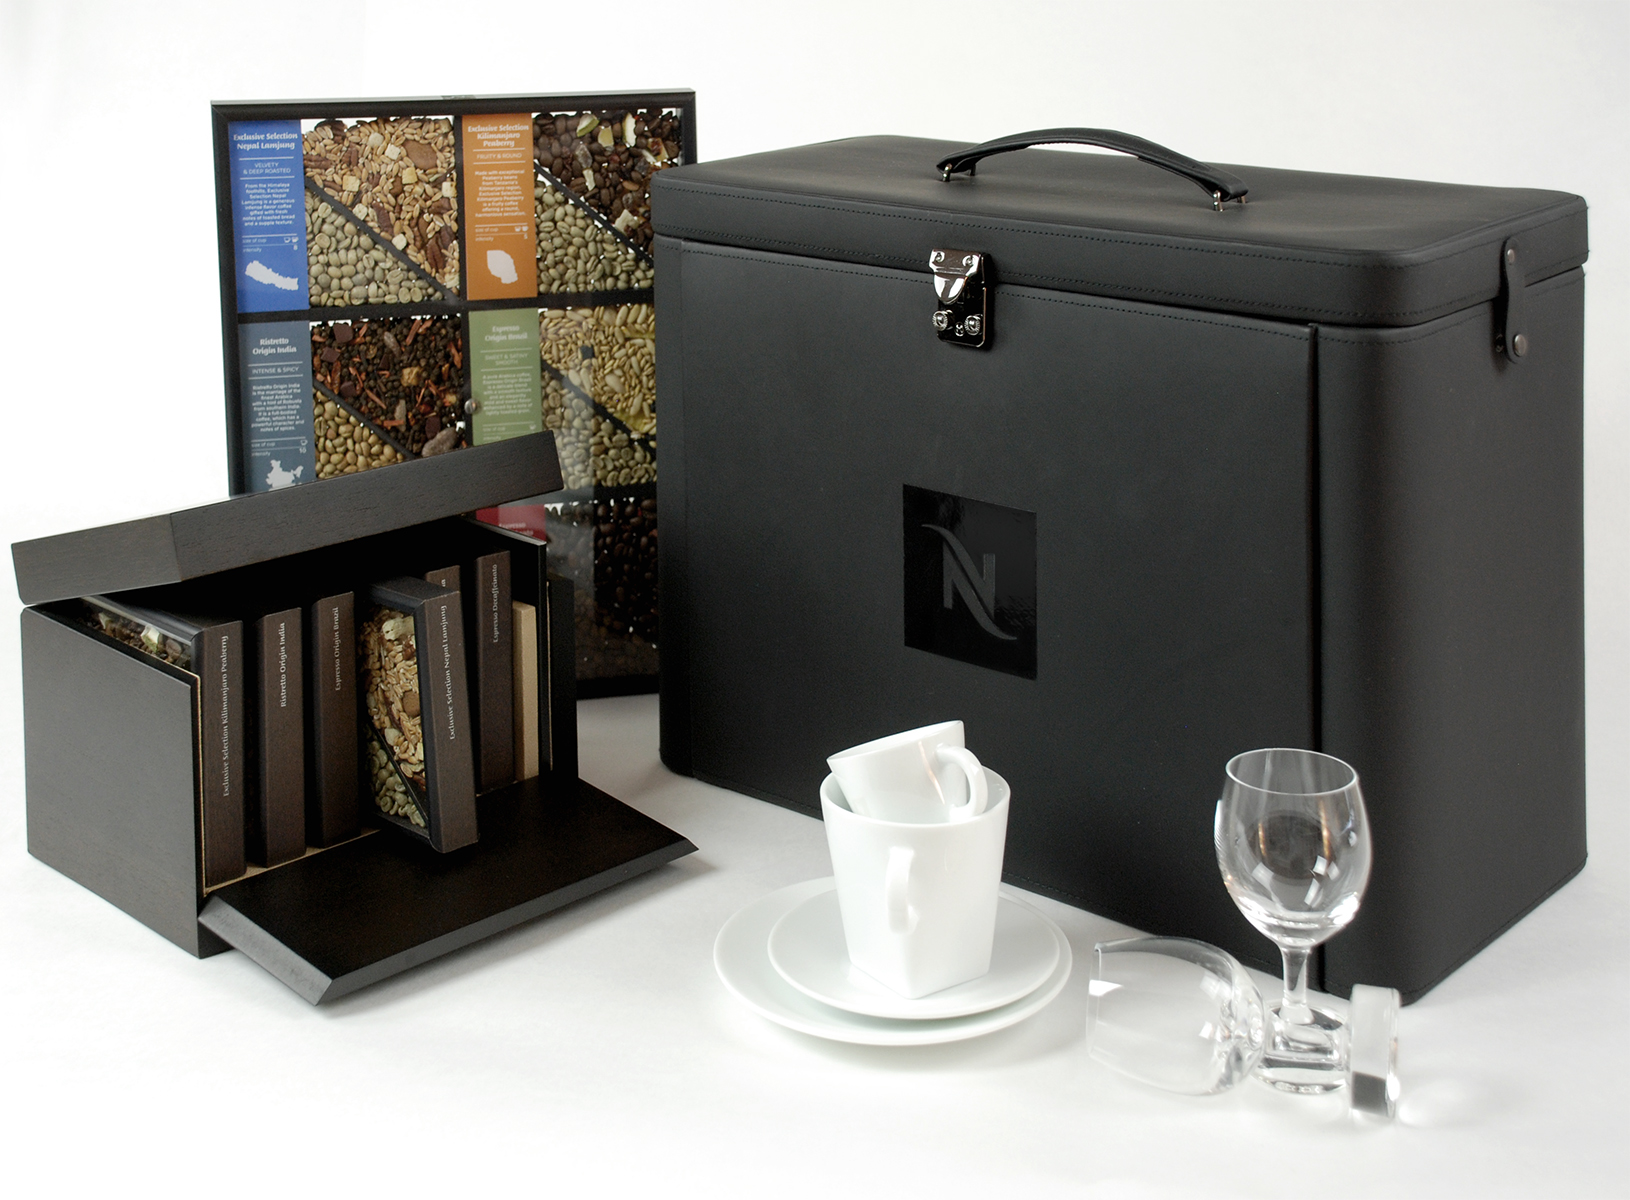 nespresso fine dinning box, ensemble valise ert présentation, packaging design, dégustation et collection de café grands crus. chloé genet chloegenet.ch